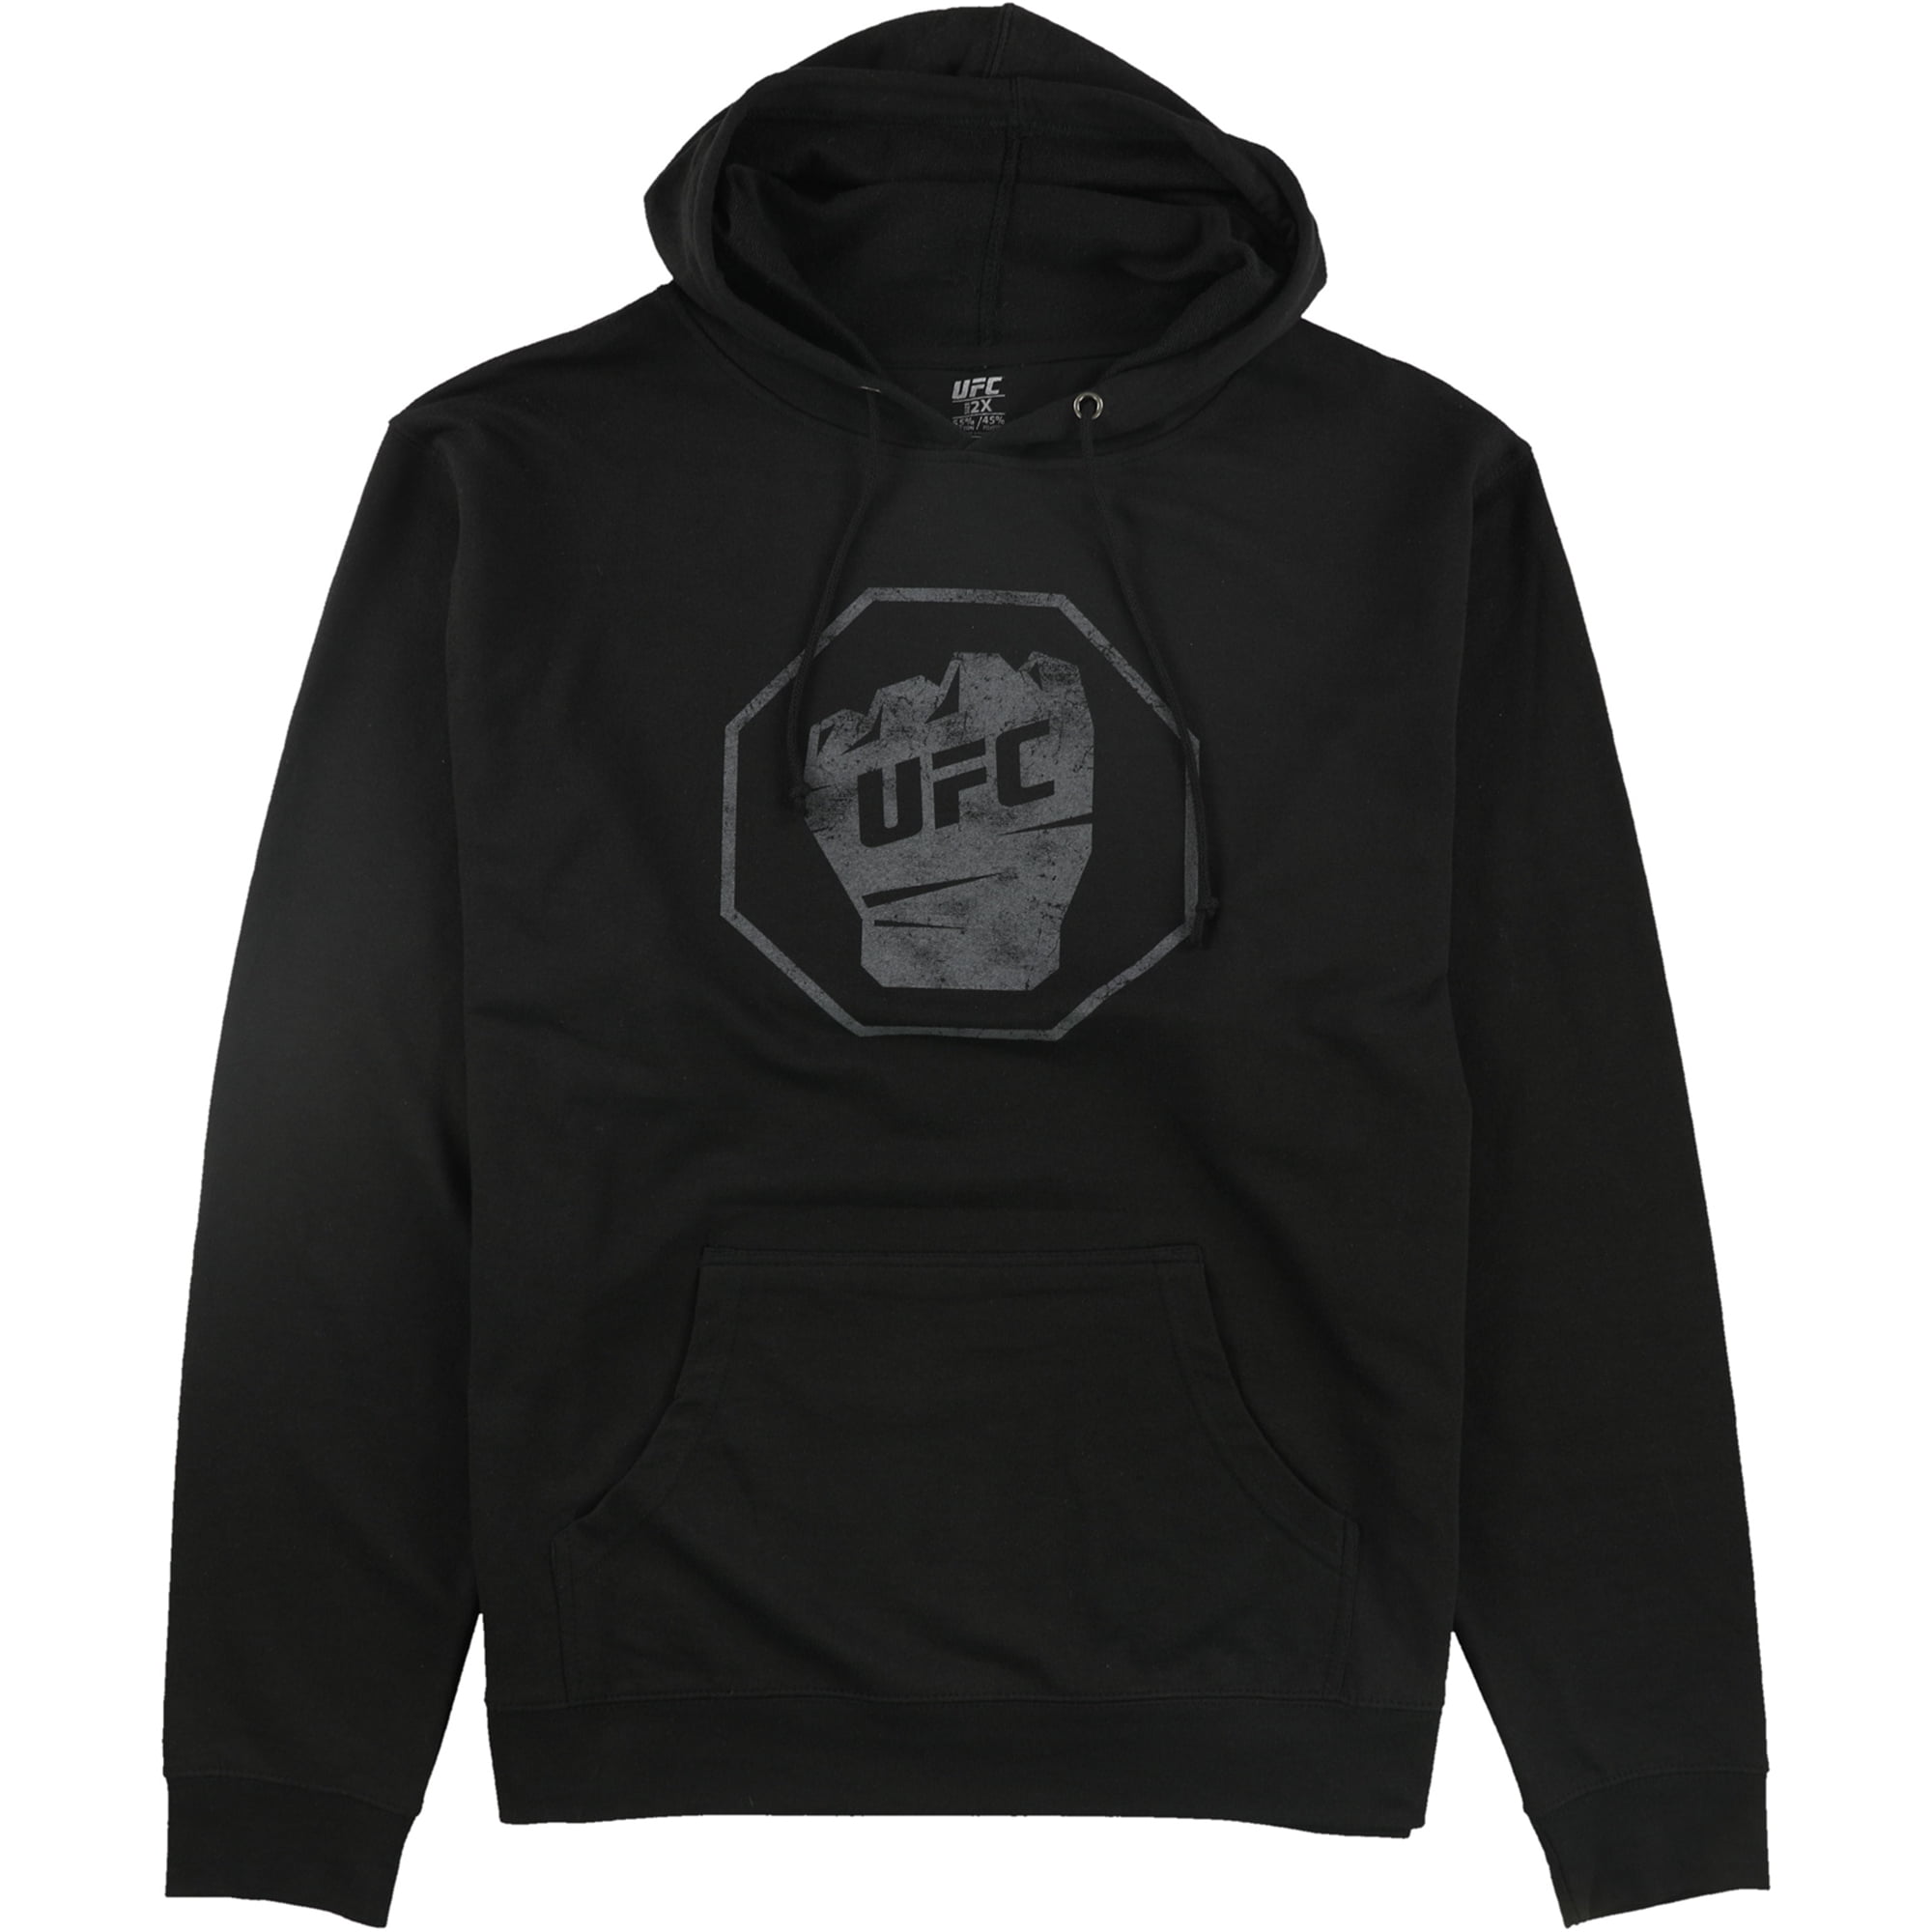 Mens Pullover Hoodie 3D Print Sweatshirt UFC Logo Long Sleeve Hooded Tops Black